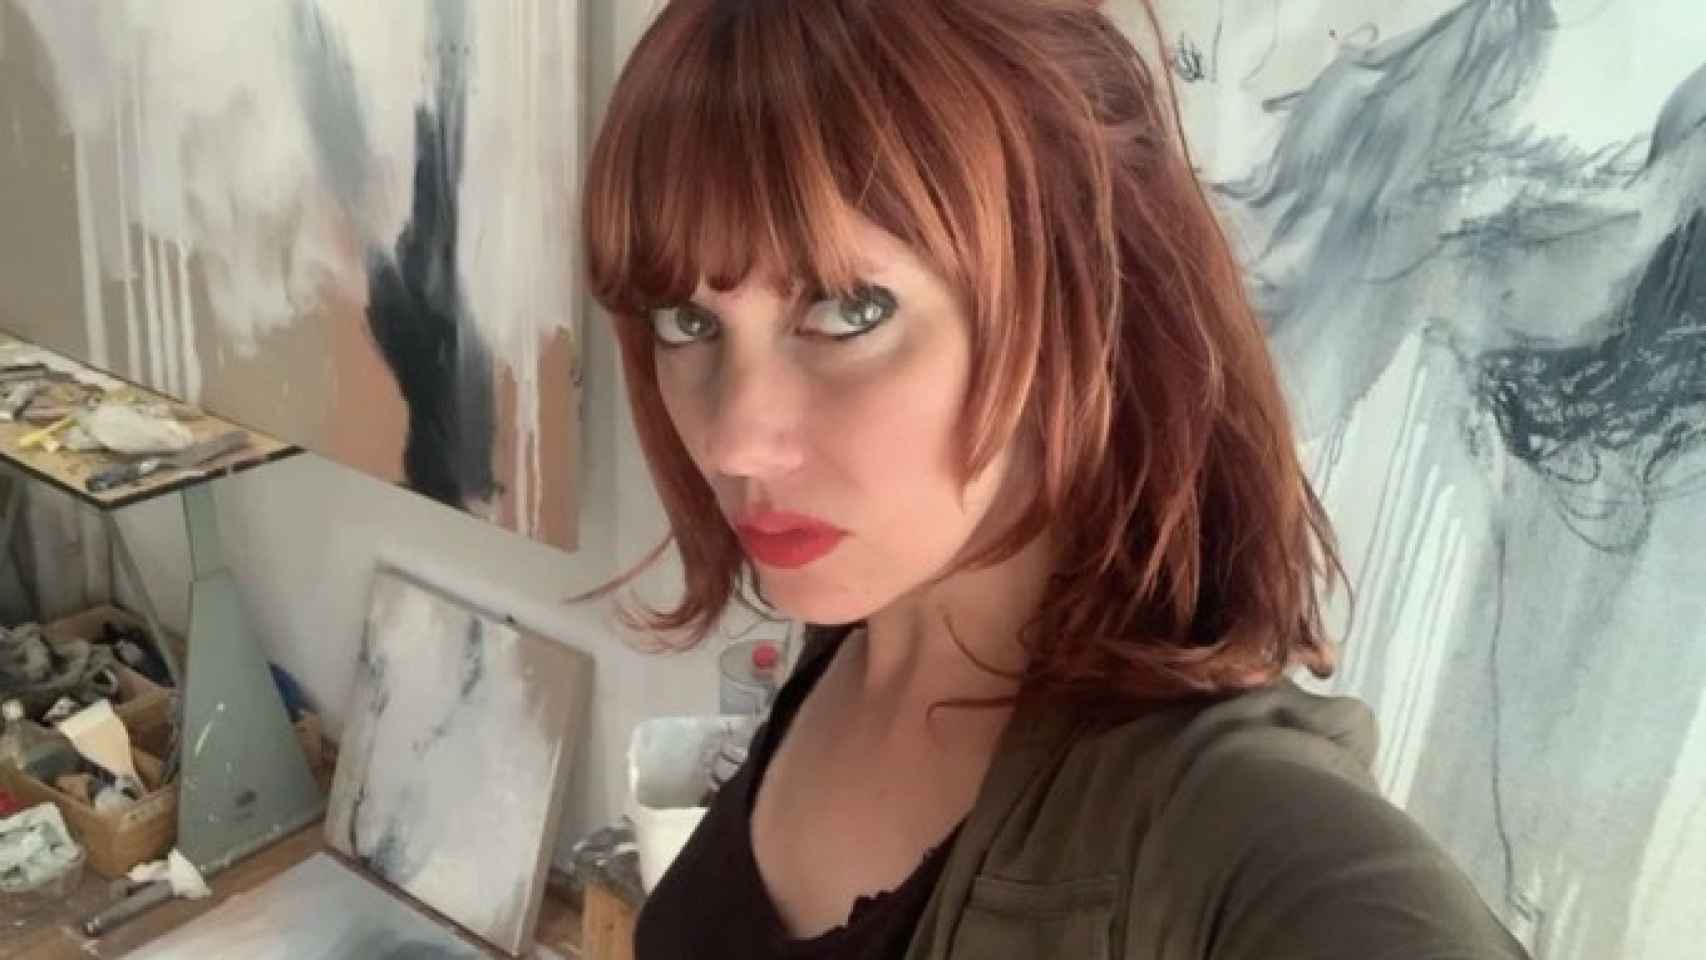 La artista Paula Bonet que denunció que lleva sufriendo 'stalking' por parte de un desconocido un año.